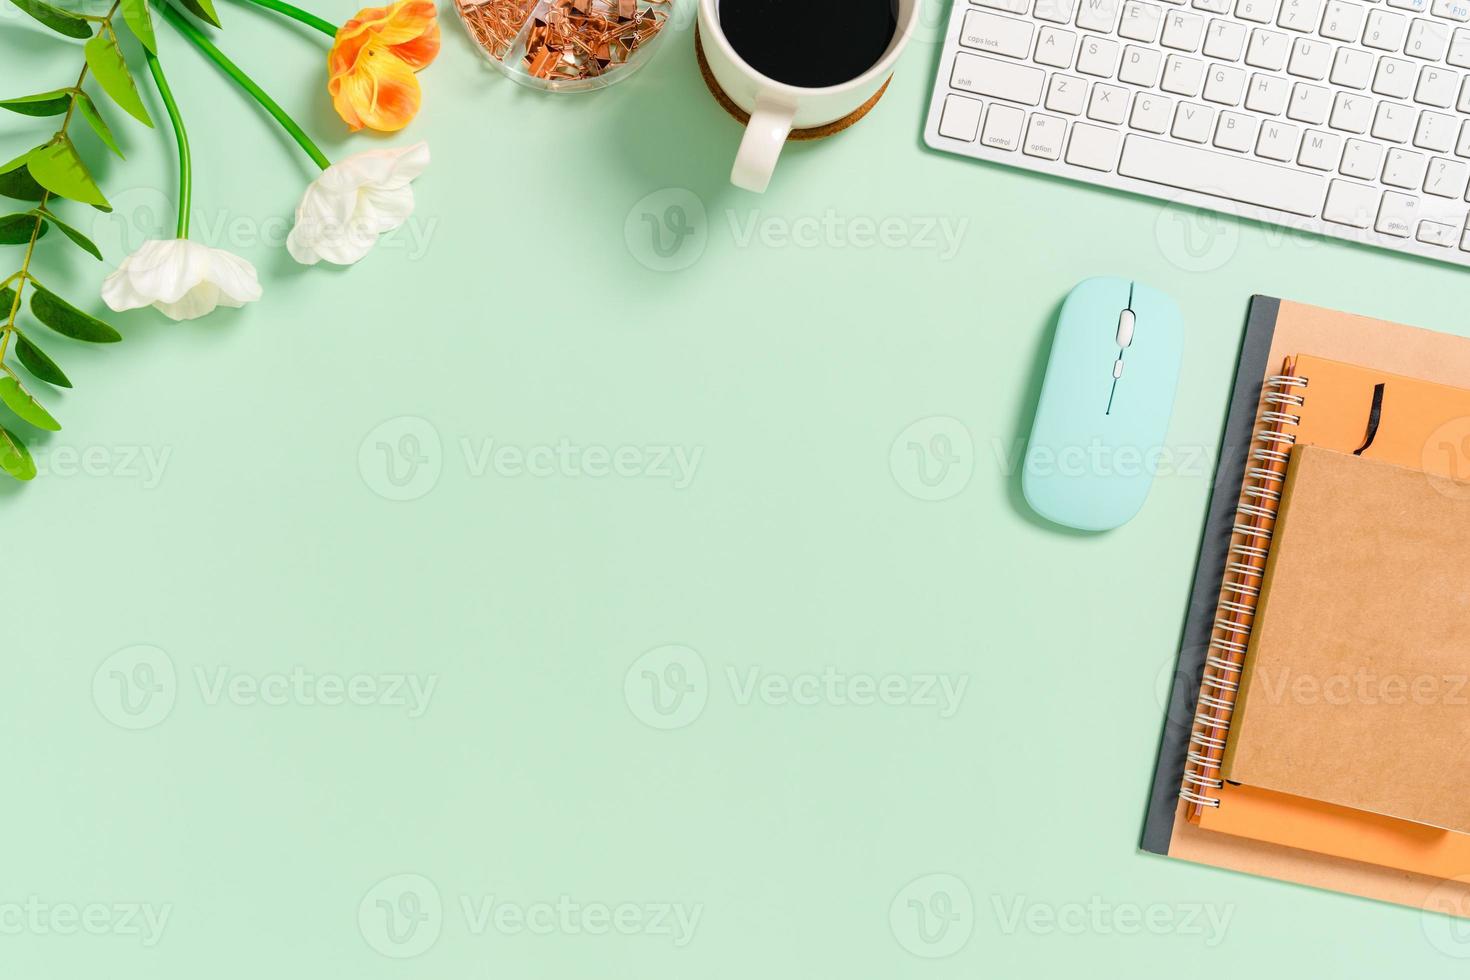 spazio di lavoro minimo - foto creativa piatta della scrivania dell'area di lavoro. scrivania da ufficio vista dall'alto con tastiera, mouse e notebook su sfondo di colore verde pastello. vista dall'alto con spazio di copia, fotografia piatta.